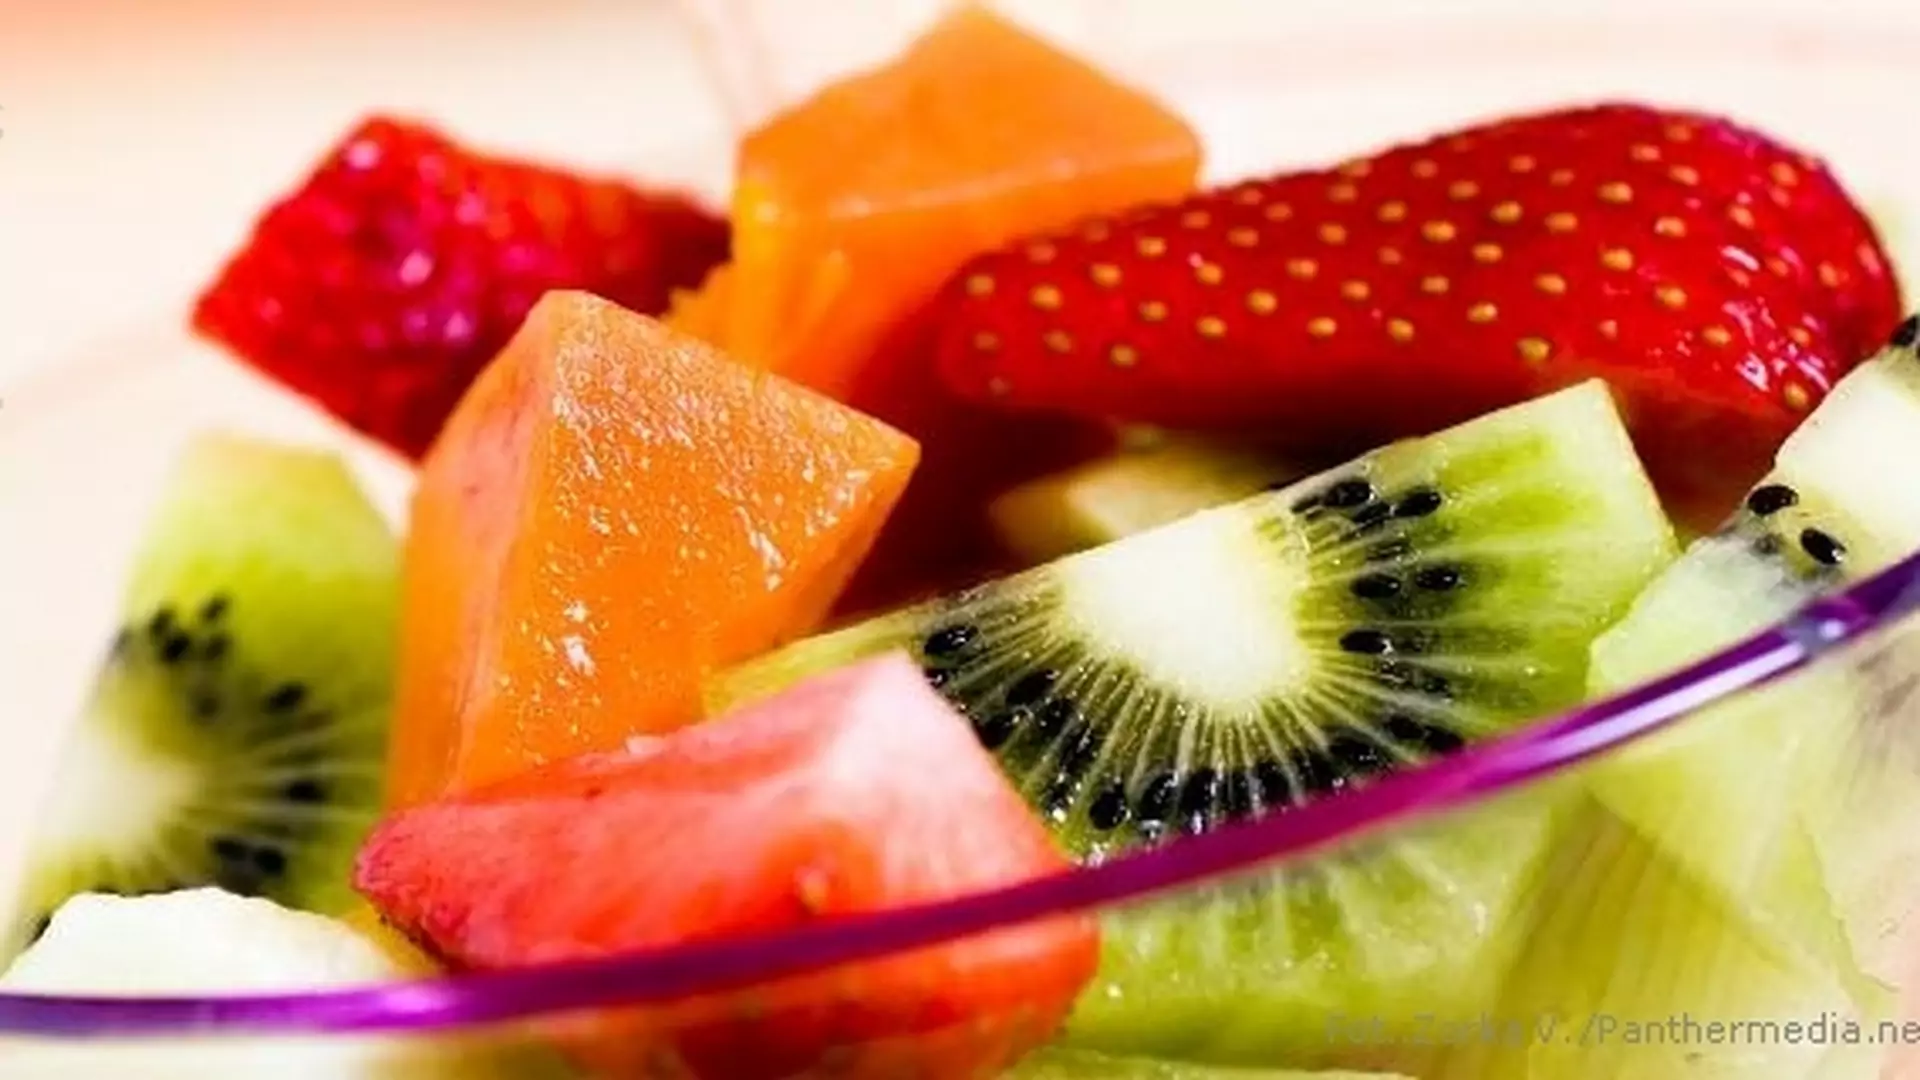 Letni miks warzyw i owoców na talerzu - pysznie, zdrowo, niskokalorycznie